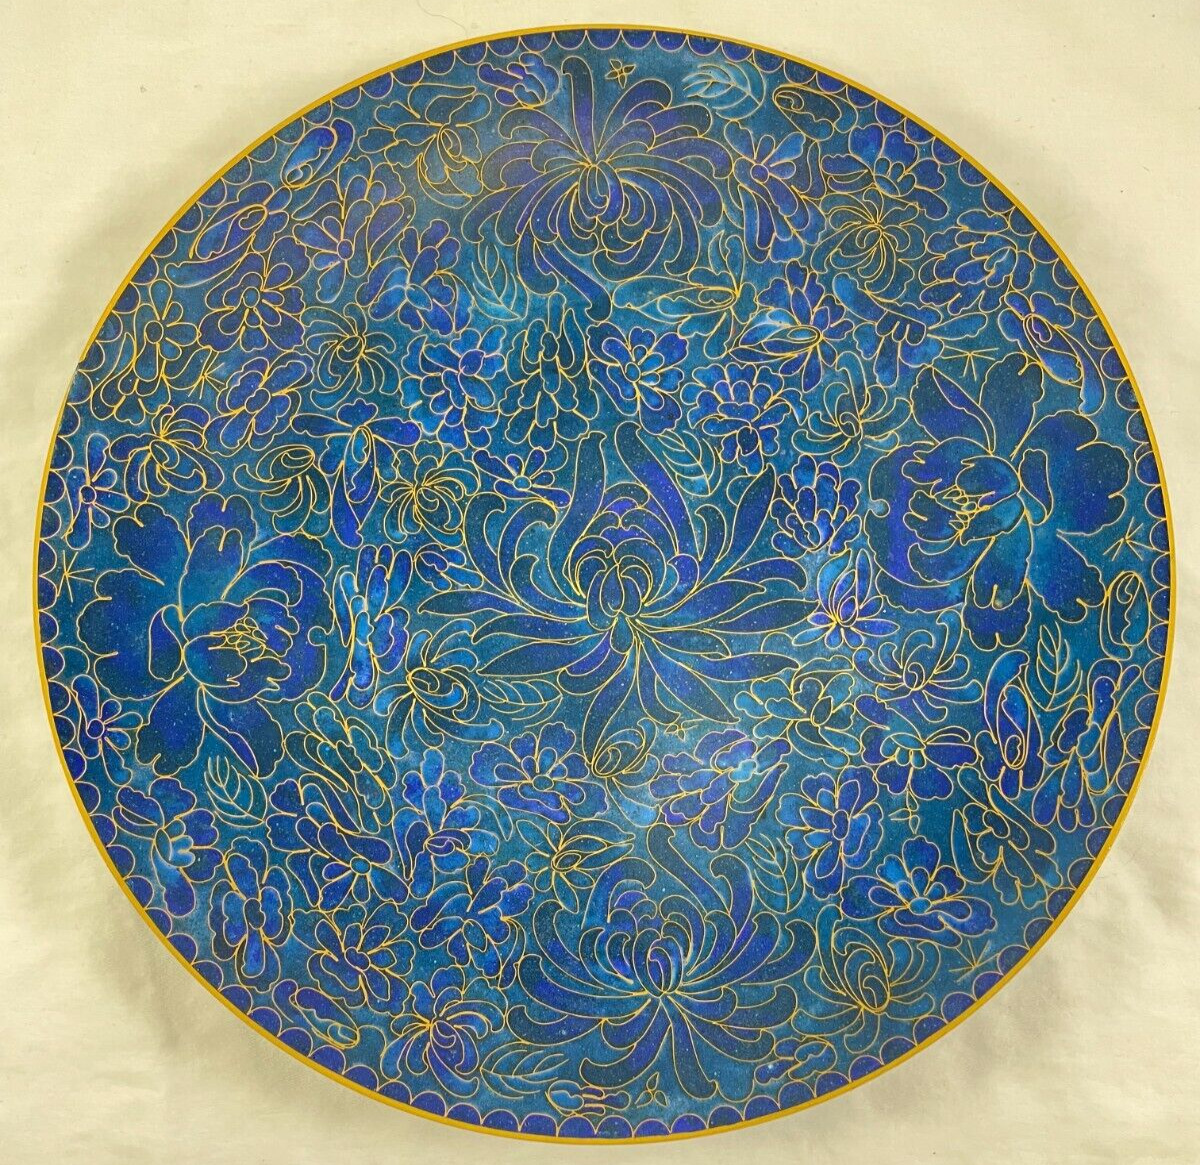 Jingfa Enamel Cloisonné Plate Blue Floral Hand Made Turquoise 10.25” Antique